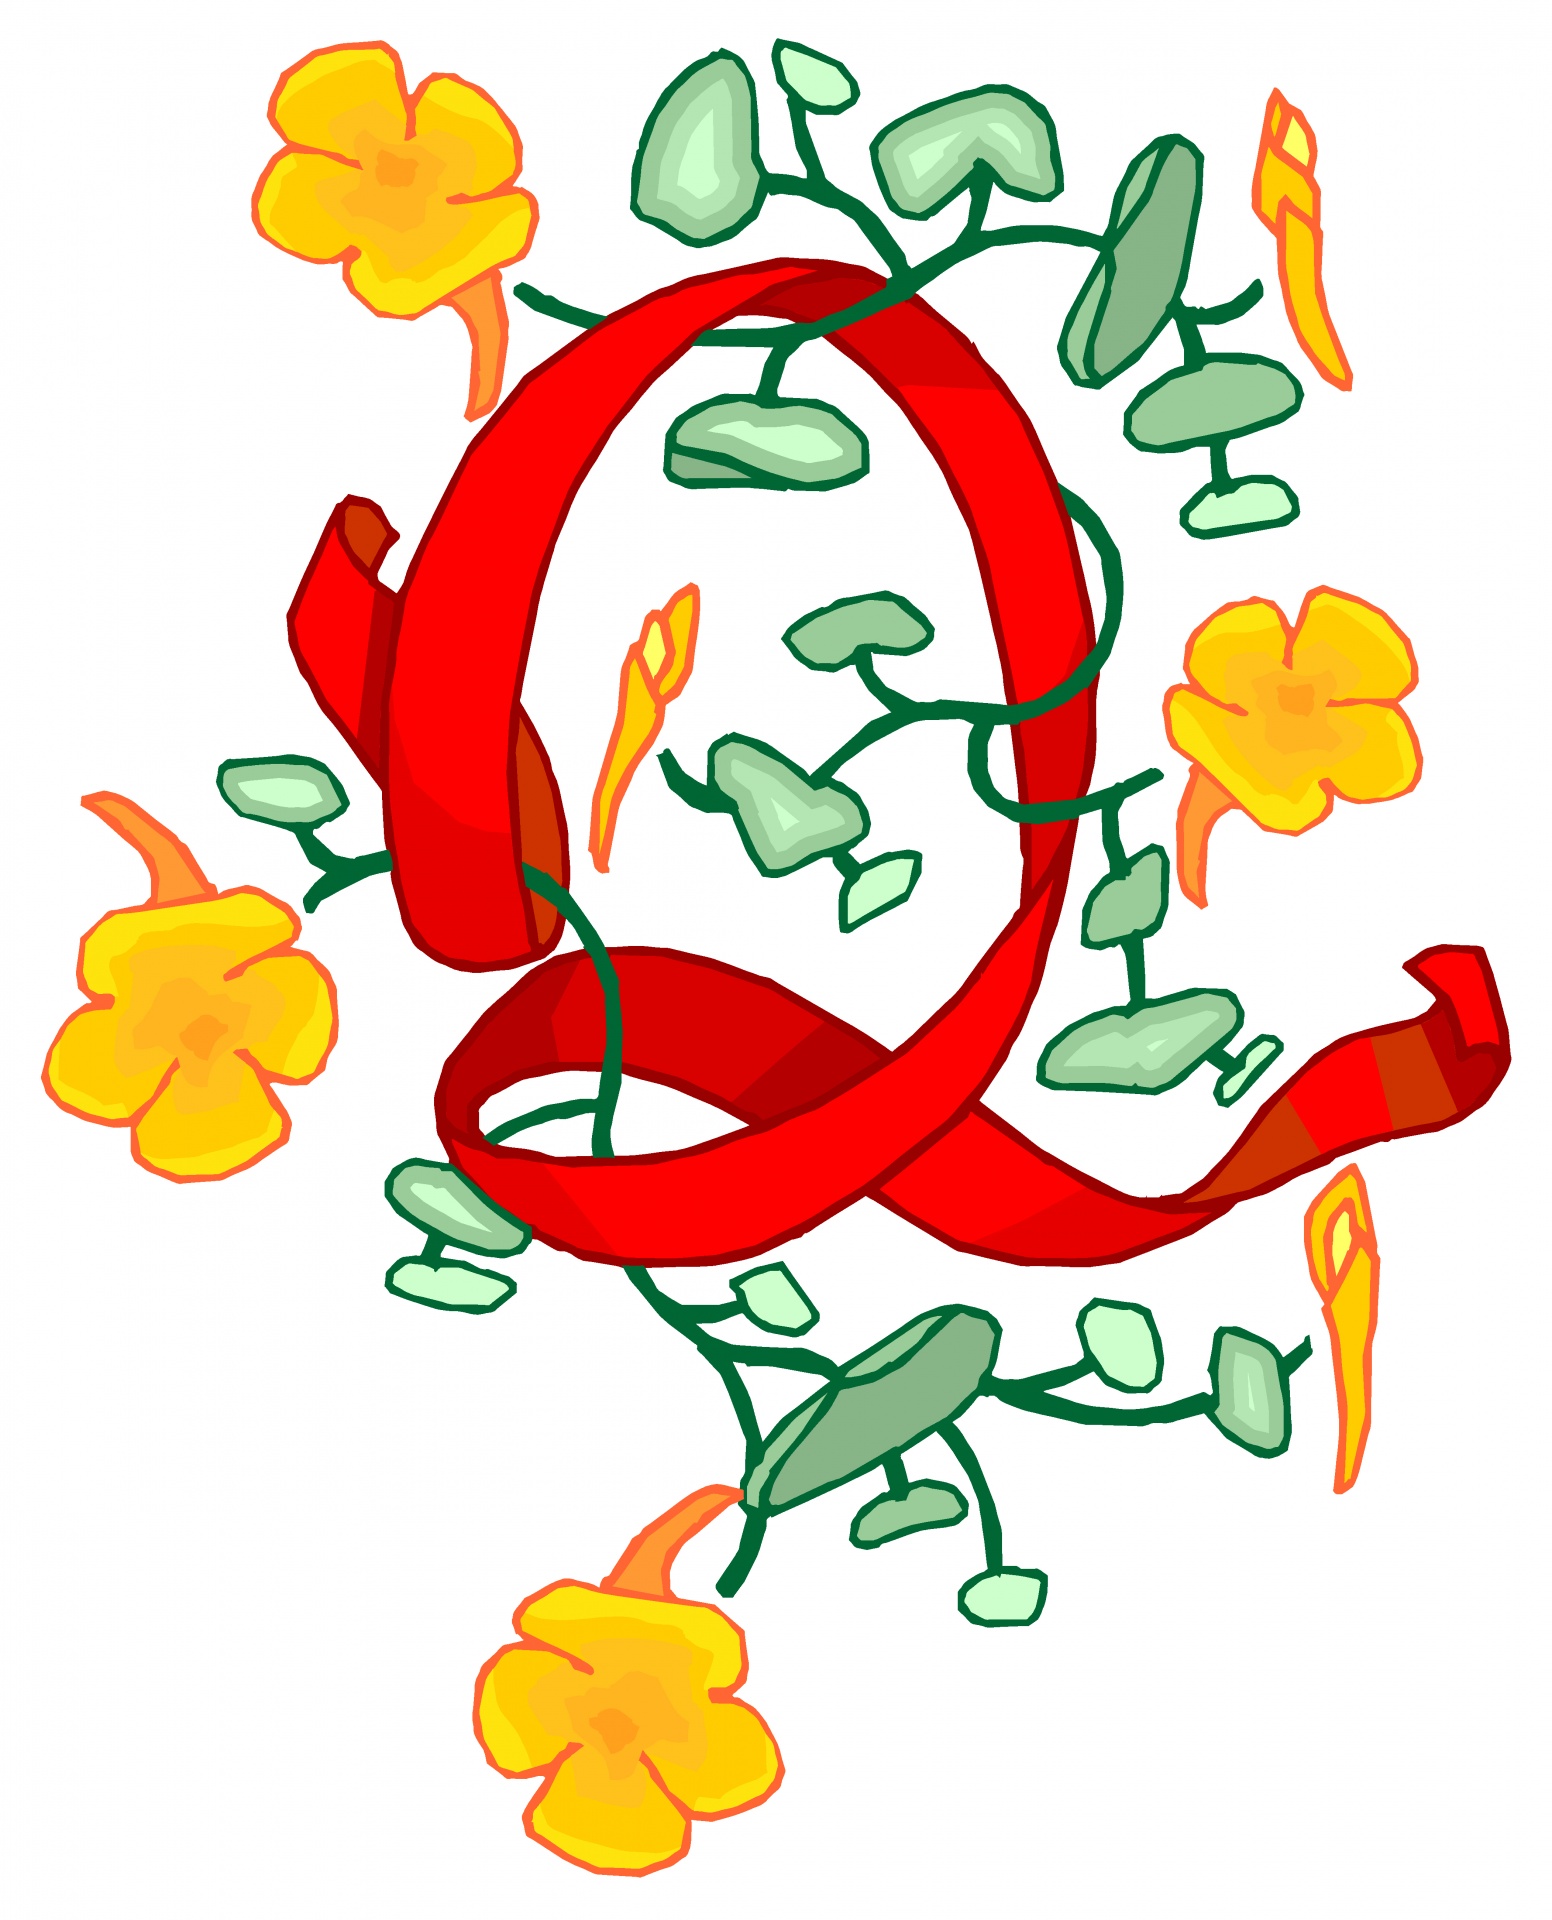 Florido rojo de la letra Q